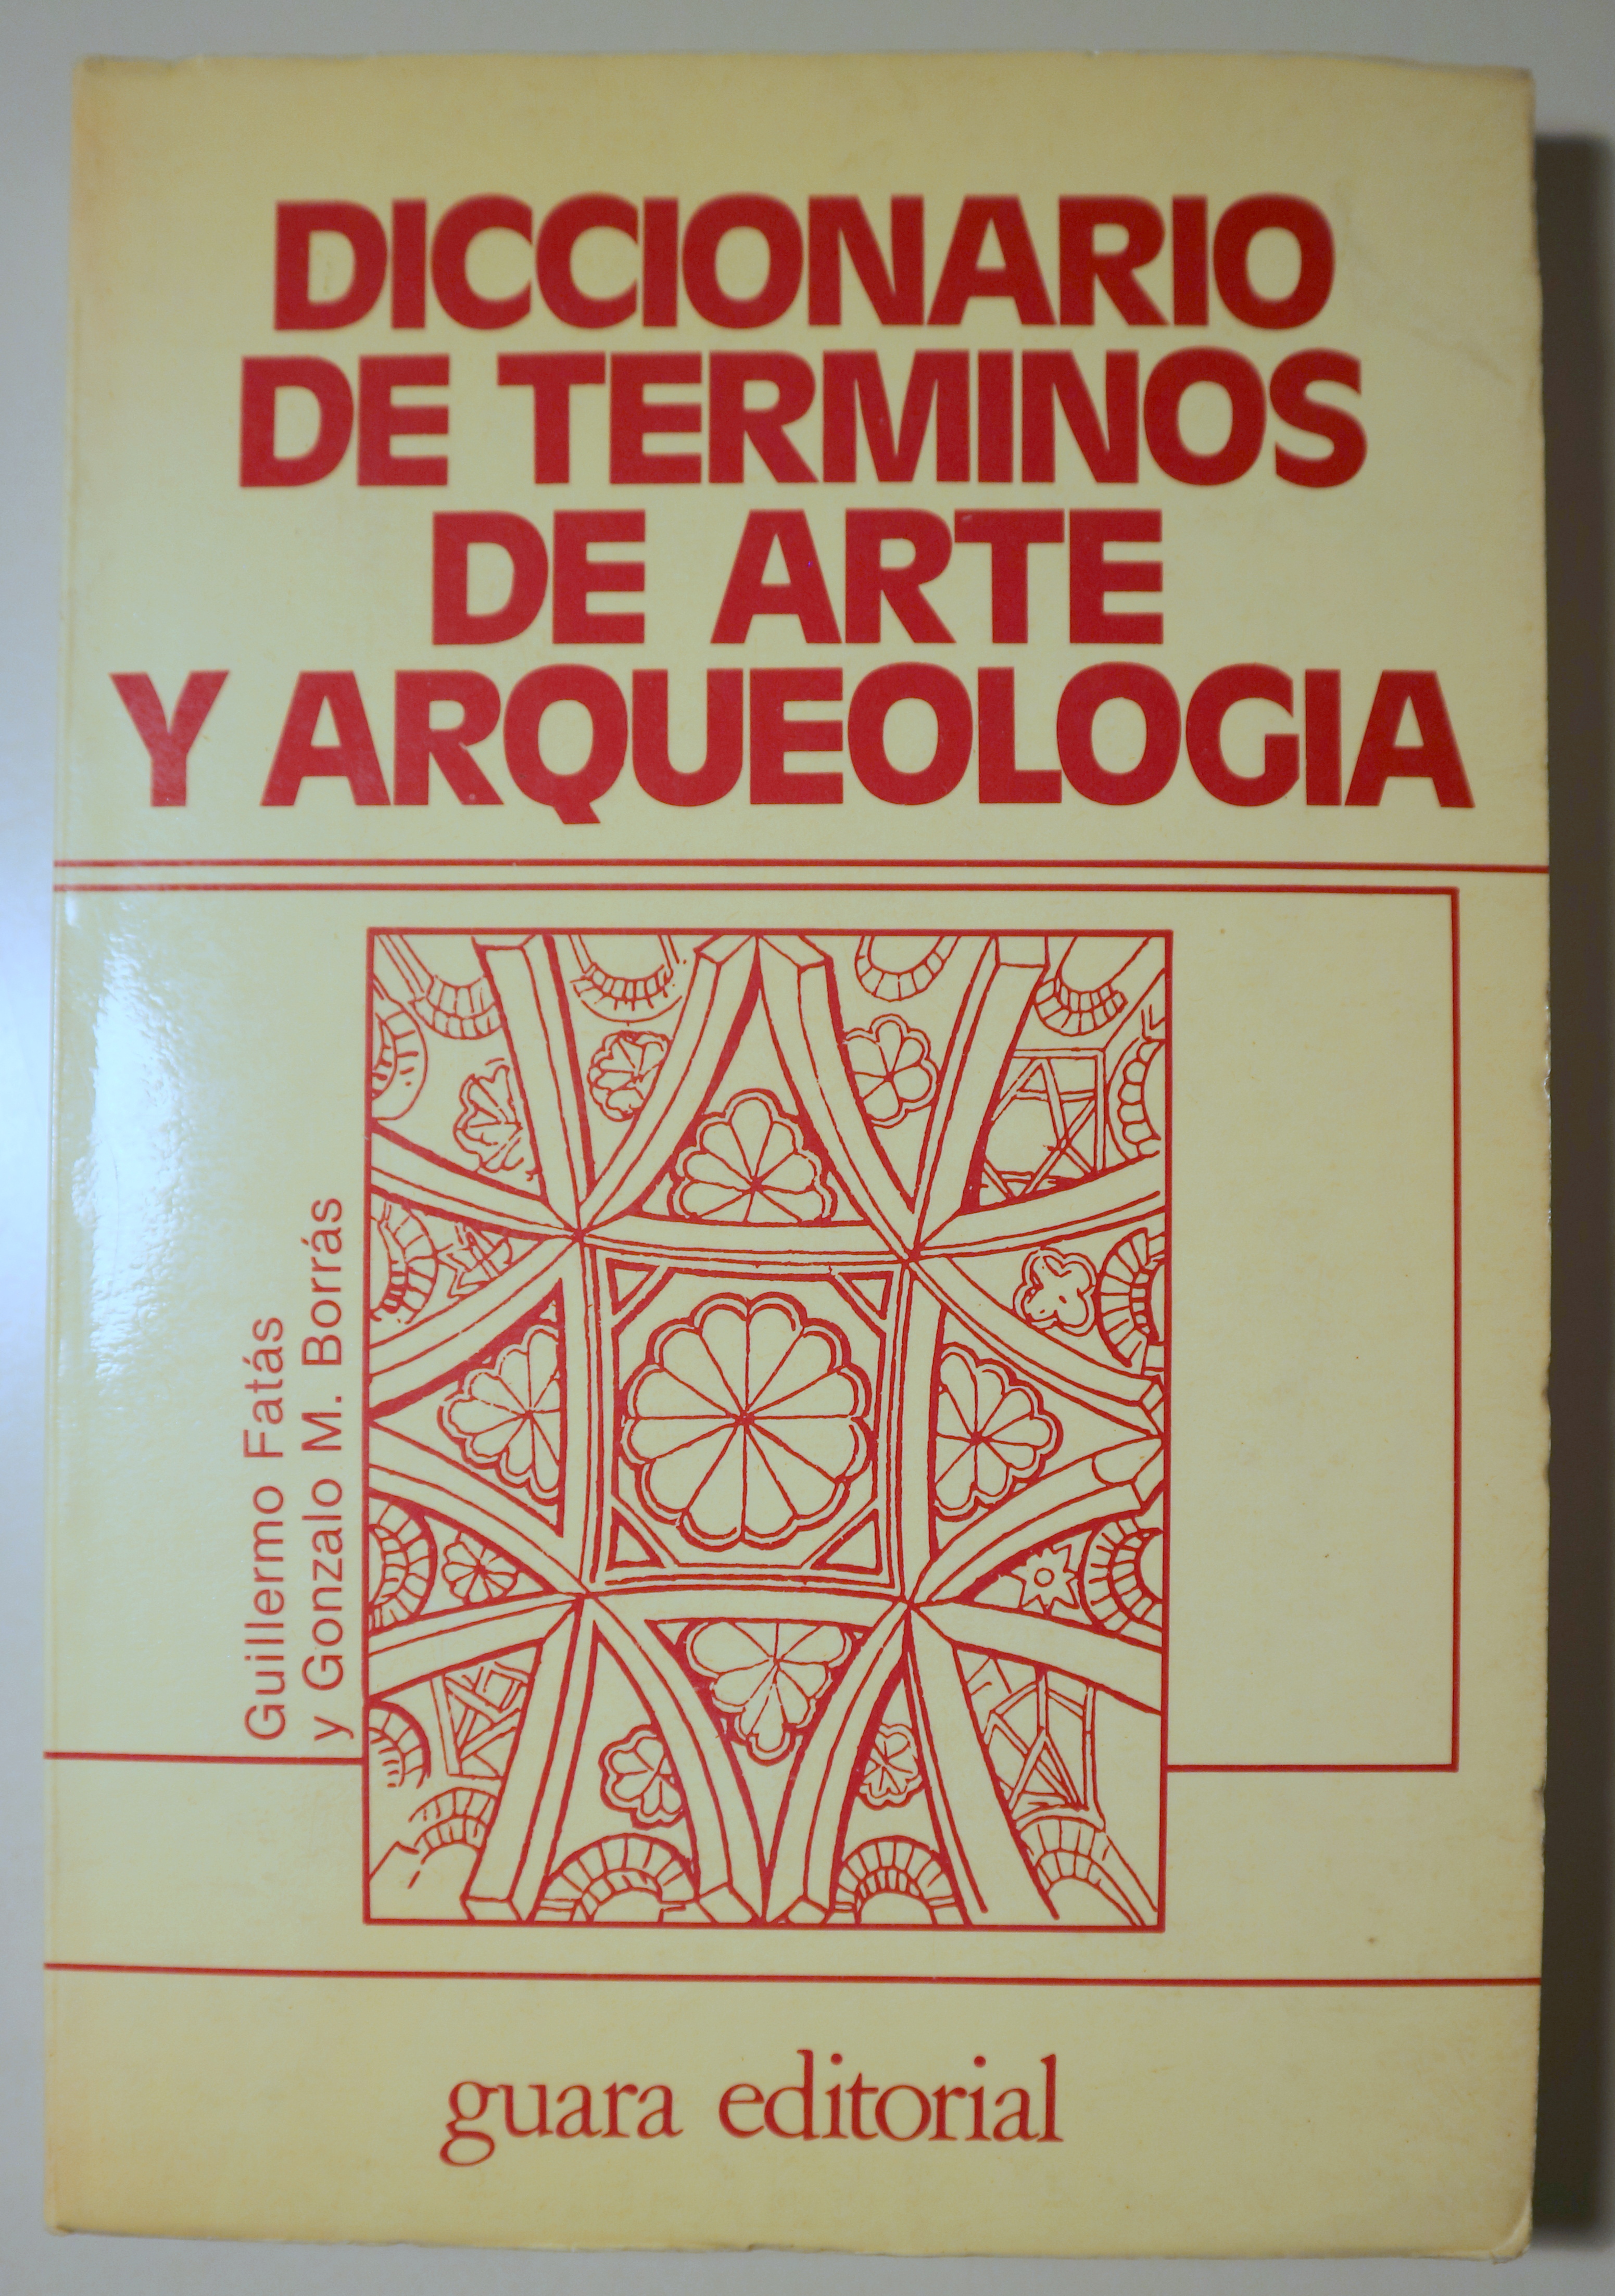 DICCIONARIO DE TERMINOS DE ARTE Y ARQUEOLOGIA - Zaragoza 1980 - Ilustrado